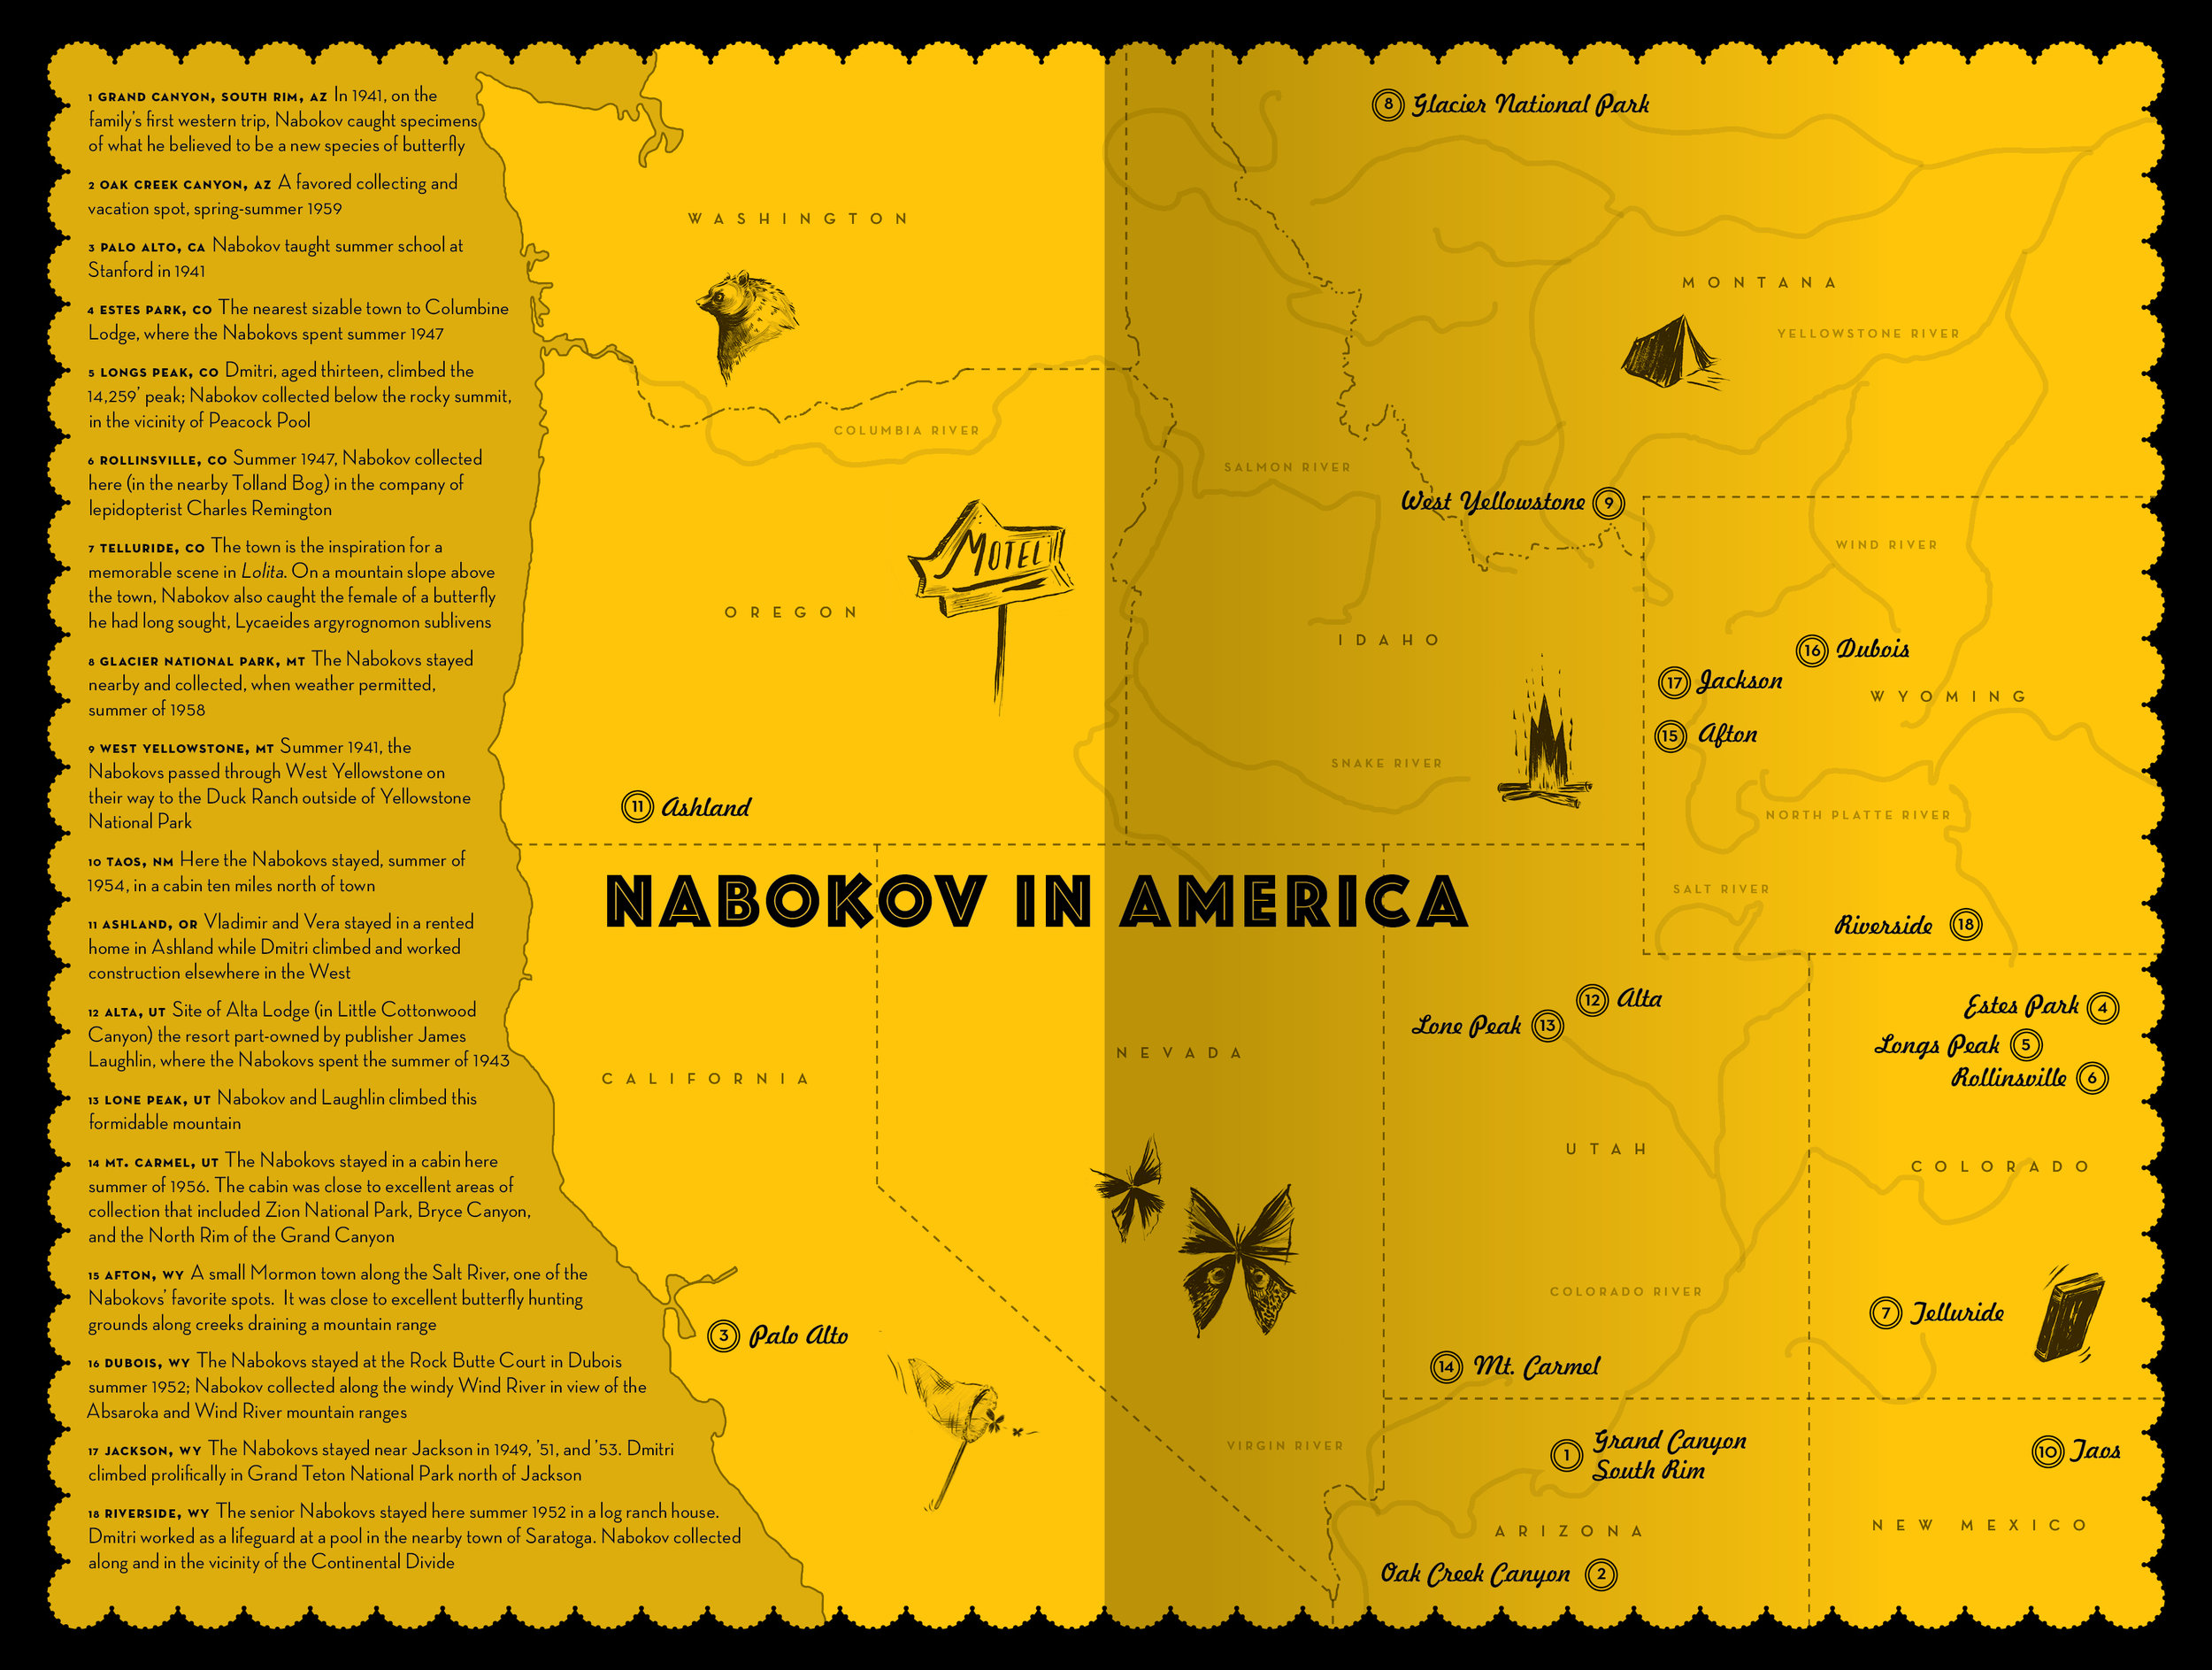 NABOKOV IN AMERICA ENDPAPER MAP